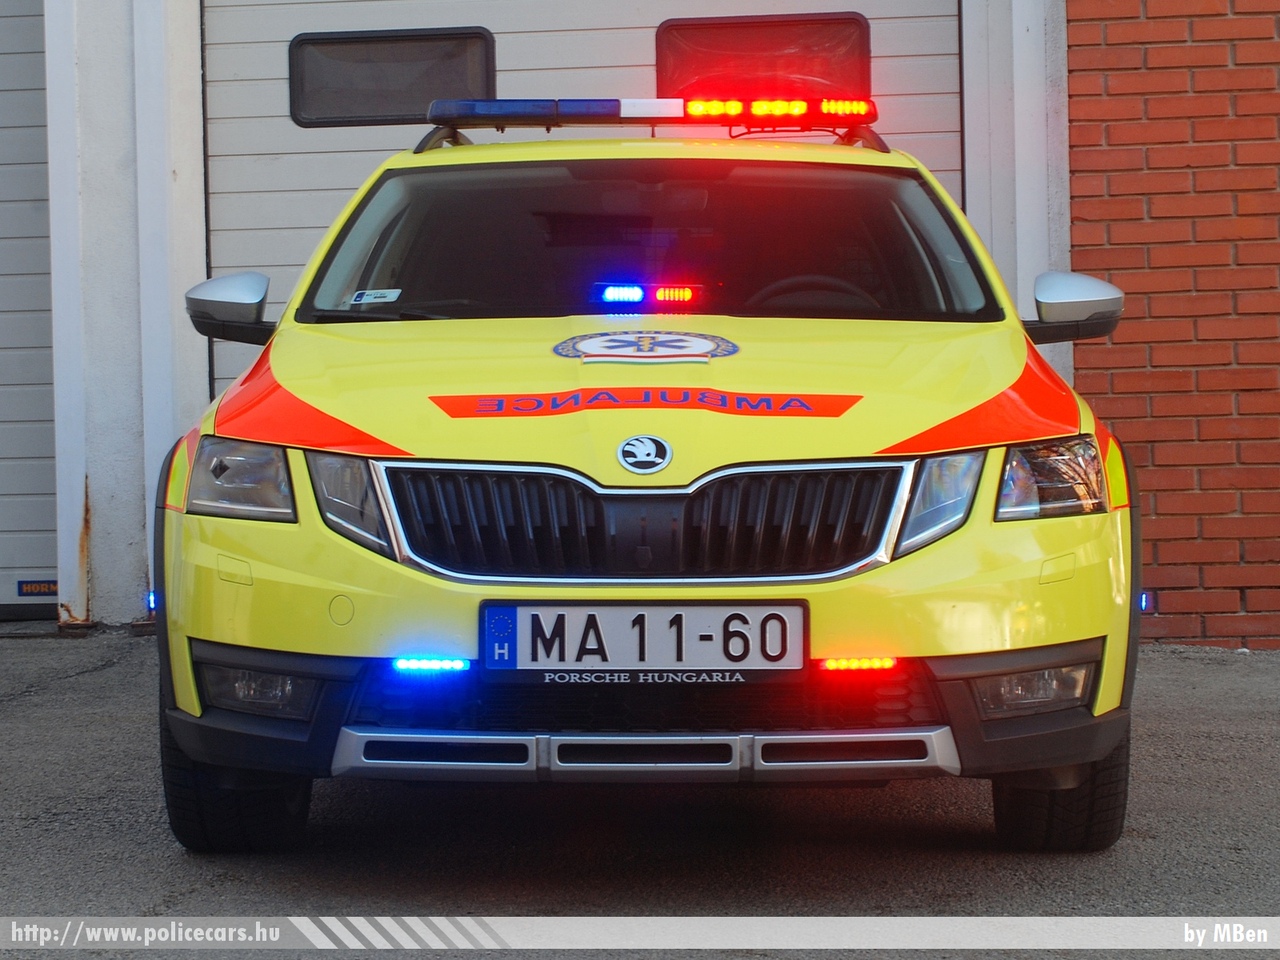 Skoda Octavia III facelift, Országos Mentõszolgálat, fotó: MBen
Keywords: magyar Magyarország mentő mentőautó Hungary hungarian ambulance MA11-60 OMSZ